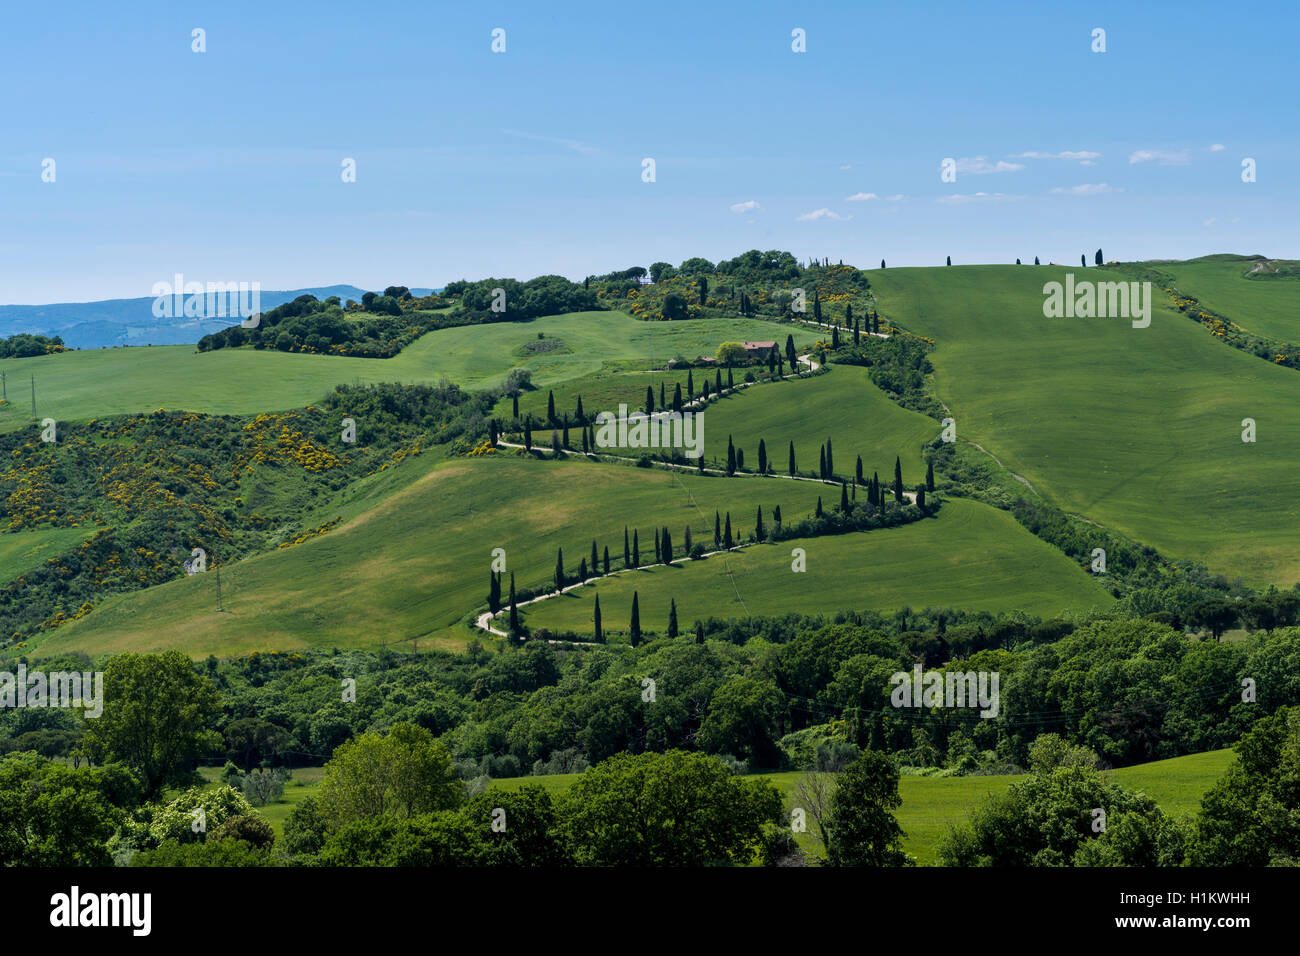 Typische Grün der toskanischen Landschaft im Val d'Orcia mit Hügel, Bäume, Felder, Zypressen und Farm Road, La Foce, Toskana, Italien Stockfoto